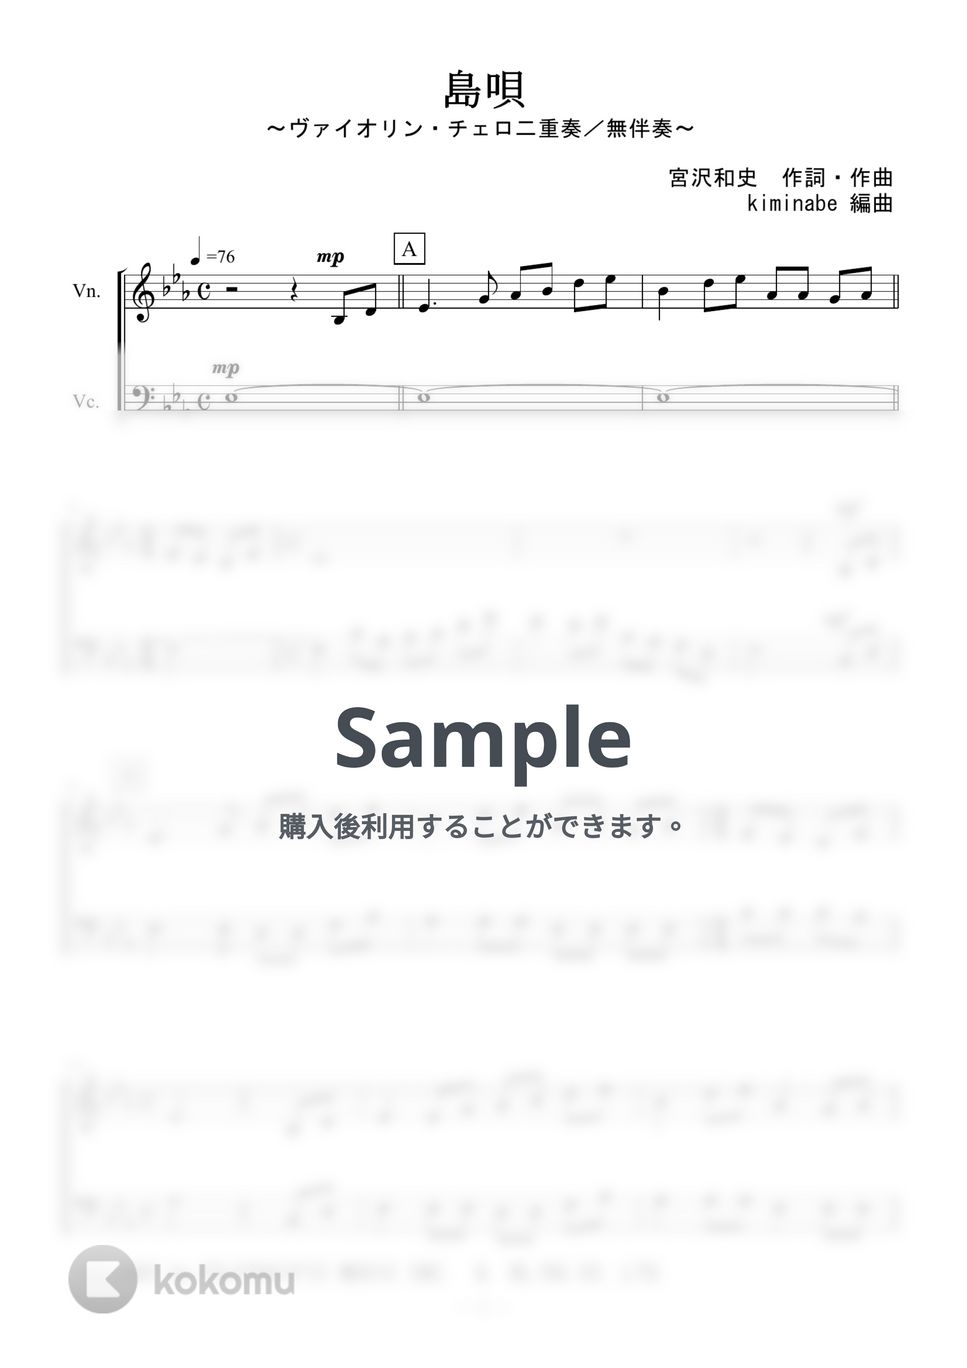 宮沢和史 - 島唄 (ヴァイオリン・チェロ二重奏／無伴奏) by kiminabe